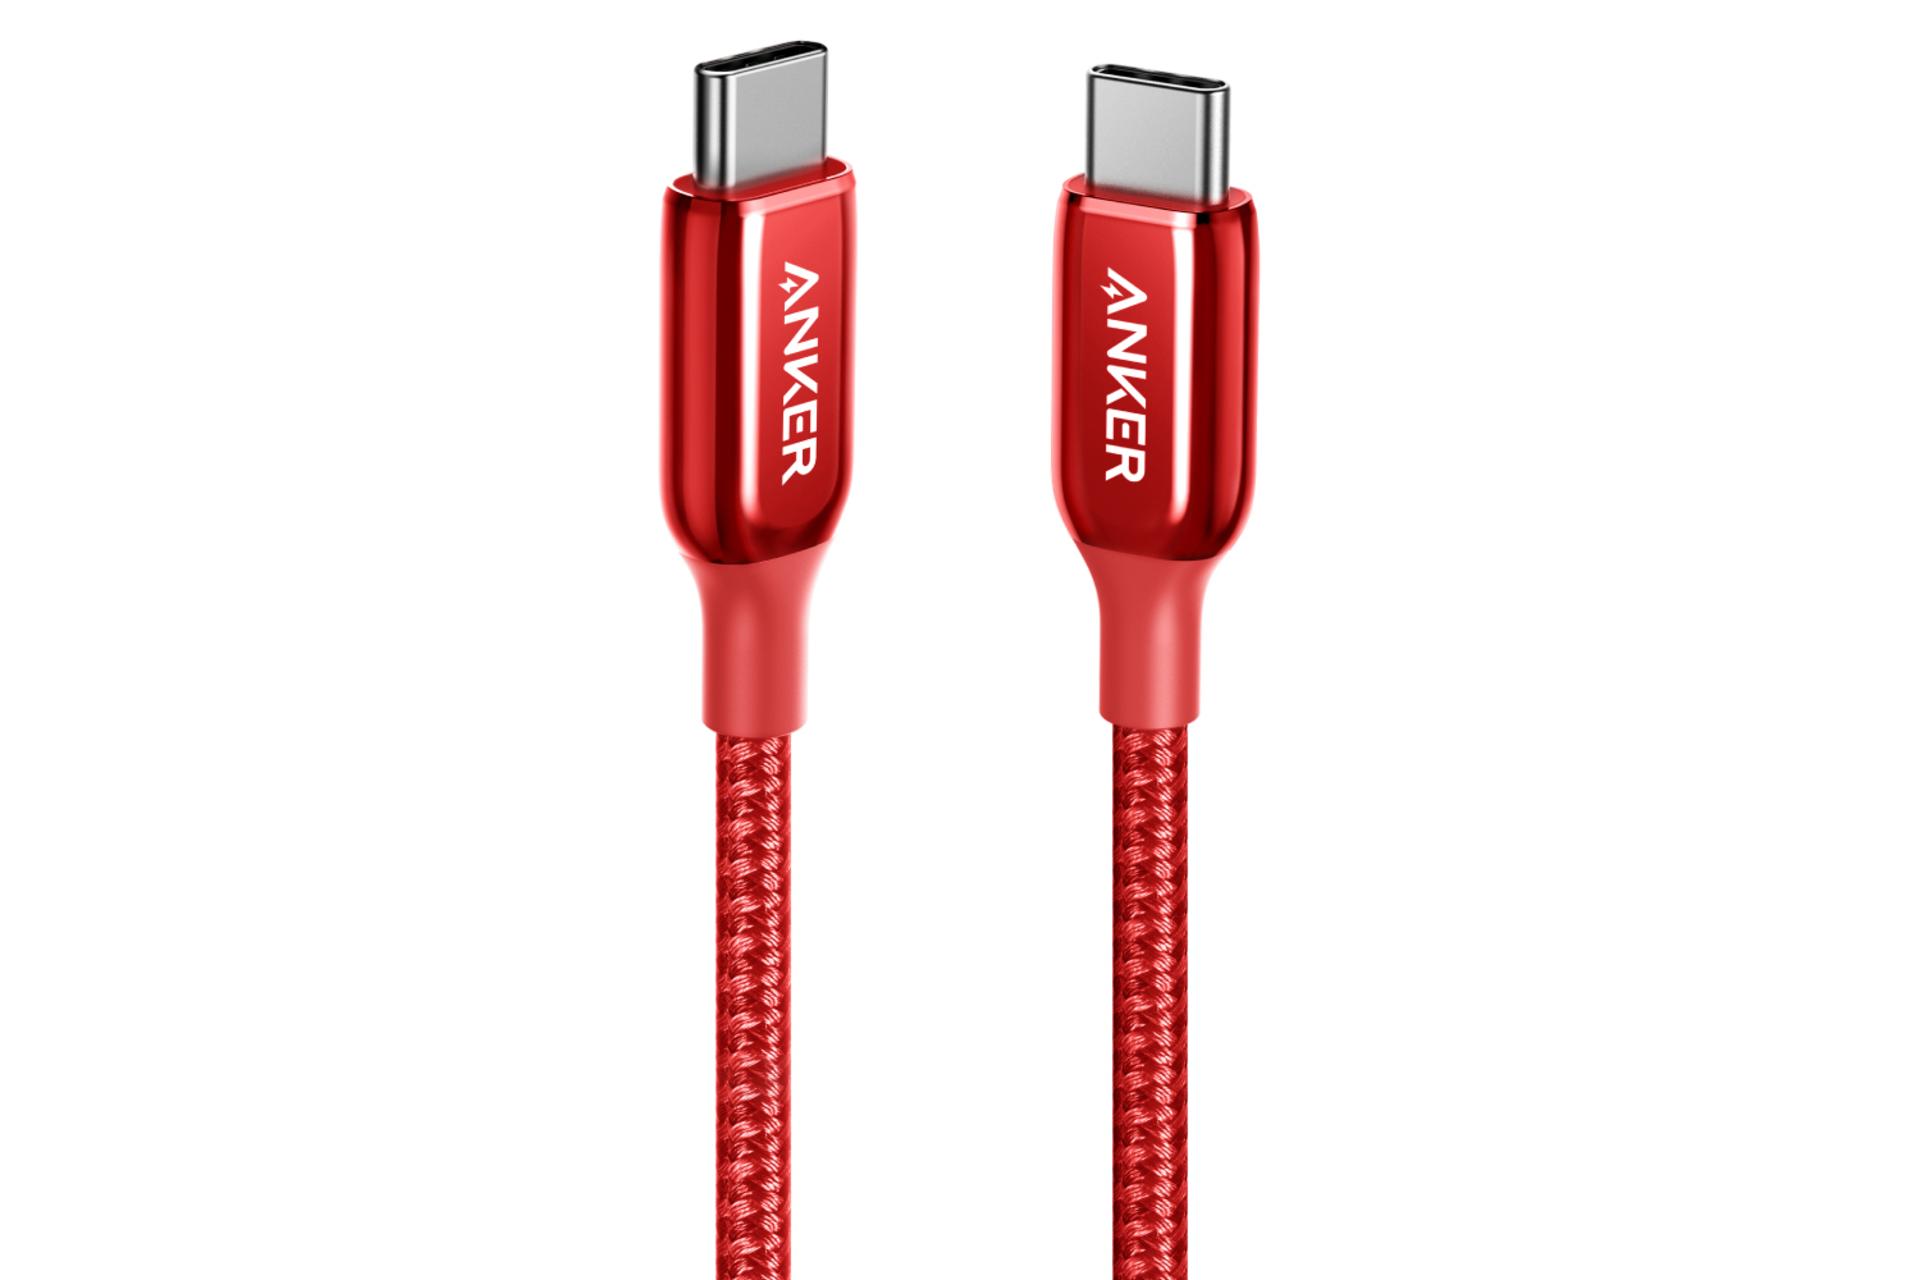 کابل شارژ USB انکر Type-C به Type-C مدل A8863 PowerLine+ III با طول 1.8 متر قرمز